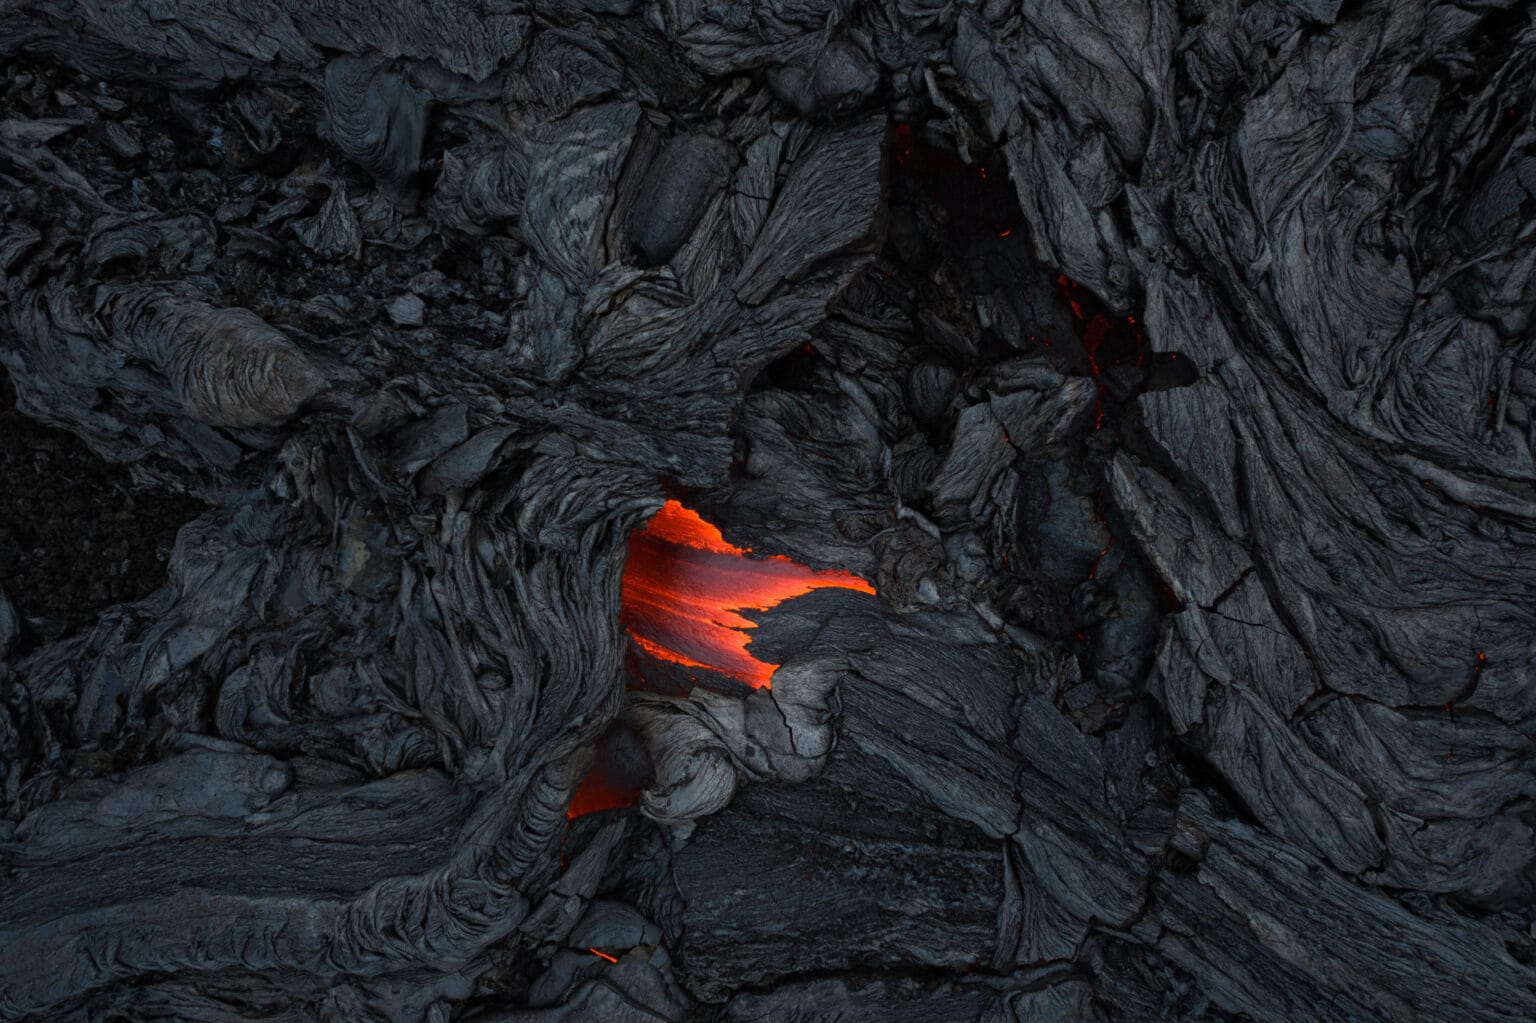 Durante uma das visitas de Daniel ao vulcão Fagradalsfjall, ele viu o vulcão parar de entrar em erupção. Naquela época, o vulcão ficaria ativo por várias horas por dia antes de ficar inativo por horas. Enquanto o vulcão emitia suas explosões finais de atividade, a vista aérea capturada pelo drone lembrou a Daniel uma língua Daniel Viñé Garcia